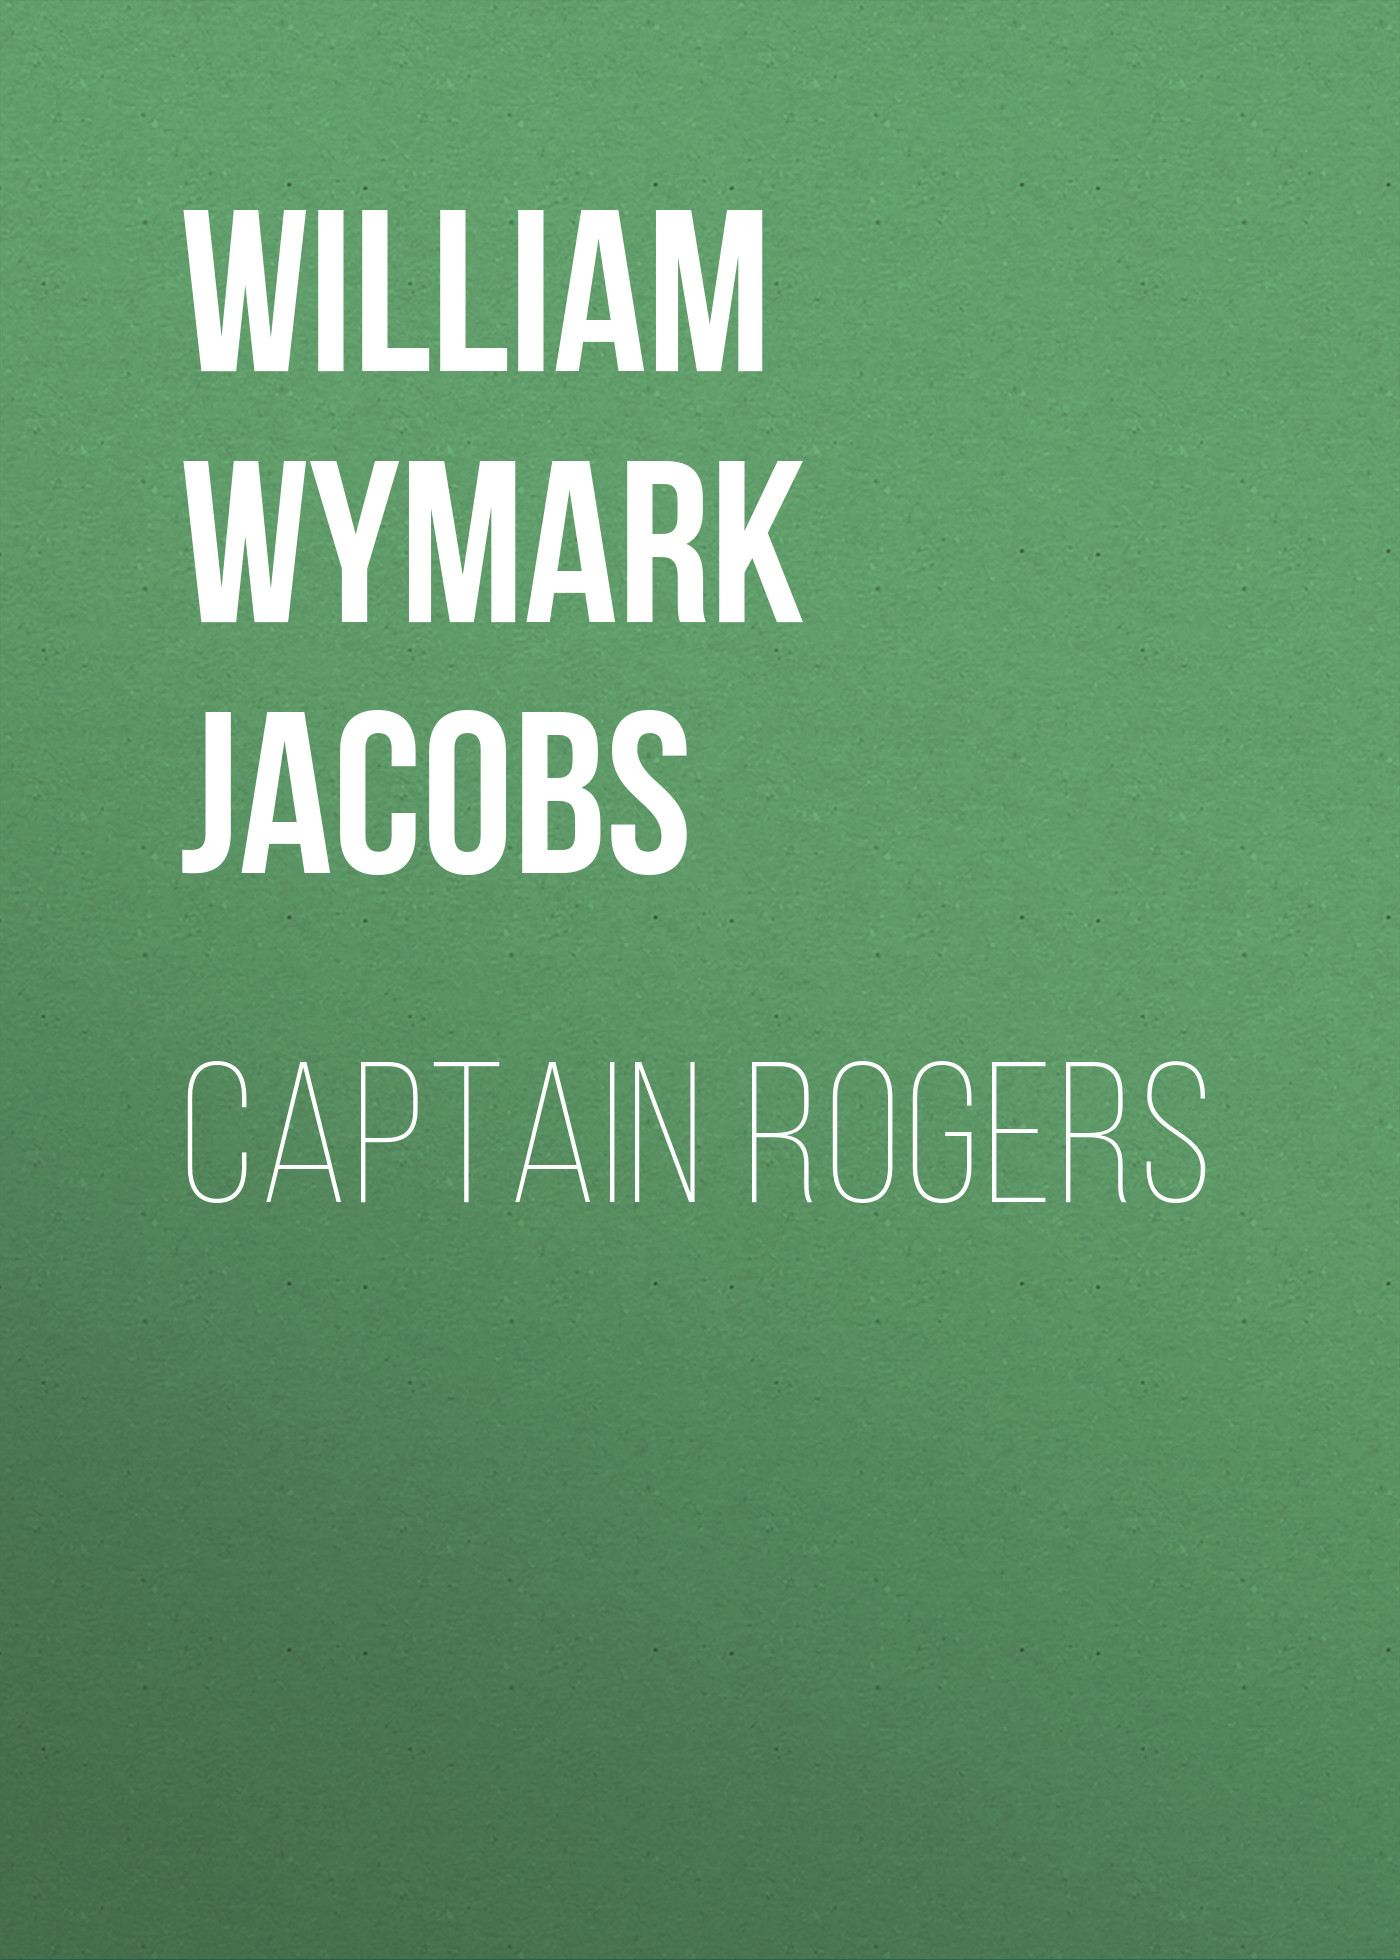 Книга Captain Rogers из серии , созданная William Wymark Jacobs, может относится к жанру Зарубежный юмор, Зарубежная старинная литература, Зарубежная классика. Стоимость электронной книги Captain Rogers с идентификатором 34842406 составляет 0 руб.